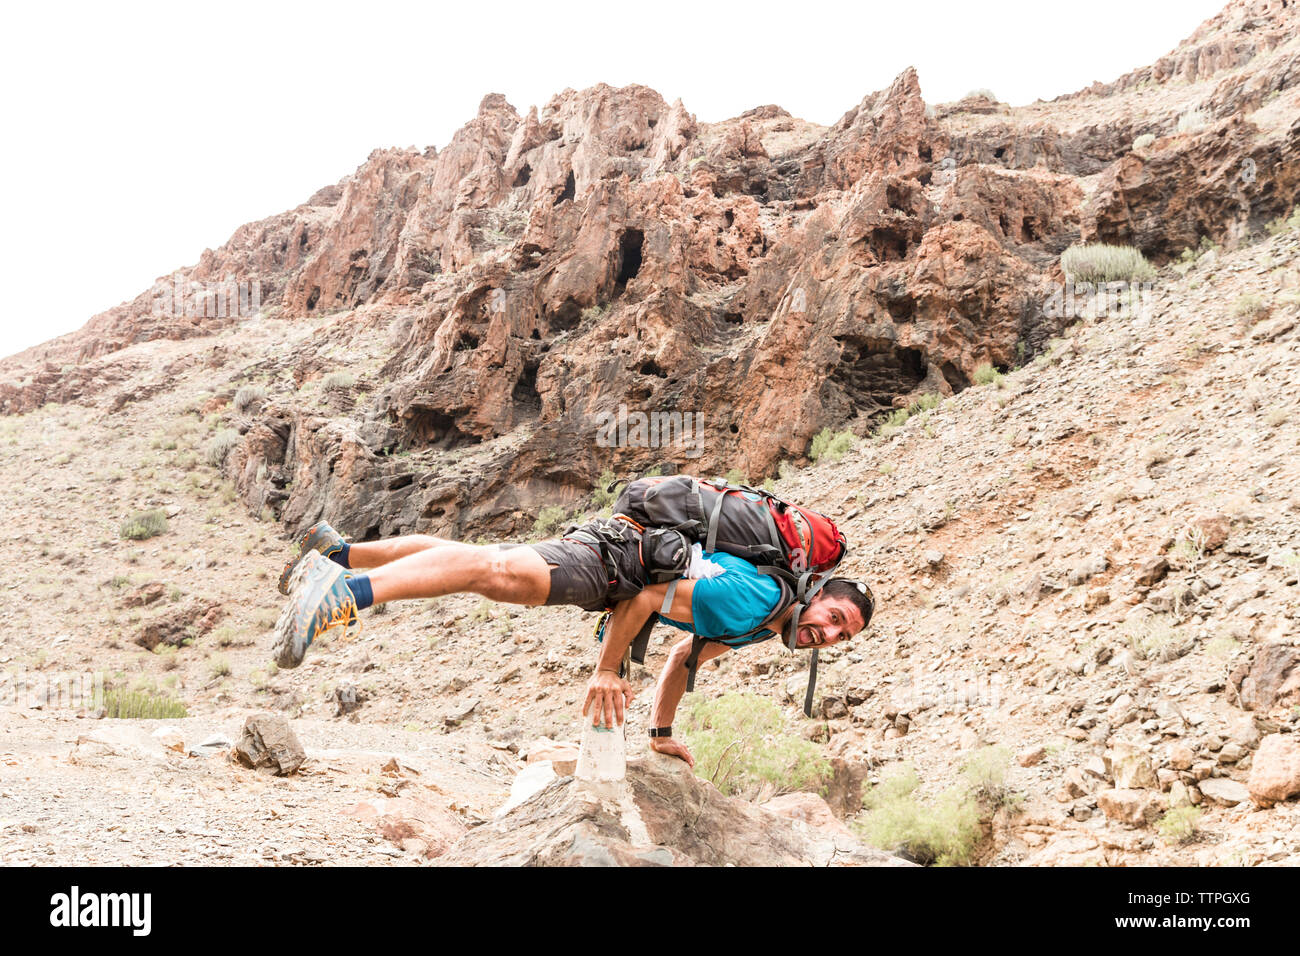 A piena lunghezza Ritratto di backpacker urlando mentre il bilanciamento sulle rocce al desert Foto Stock